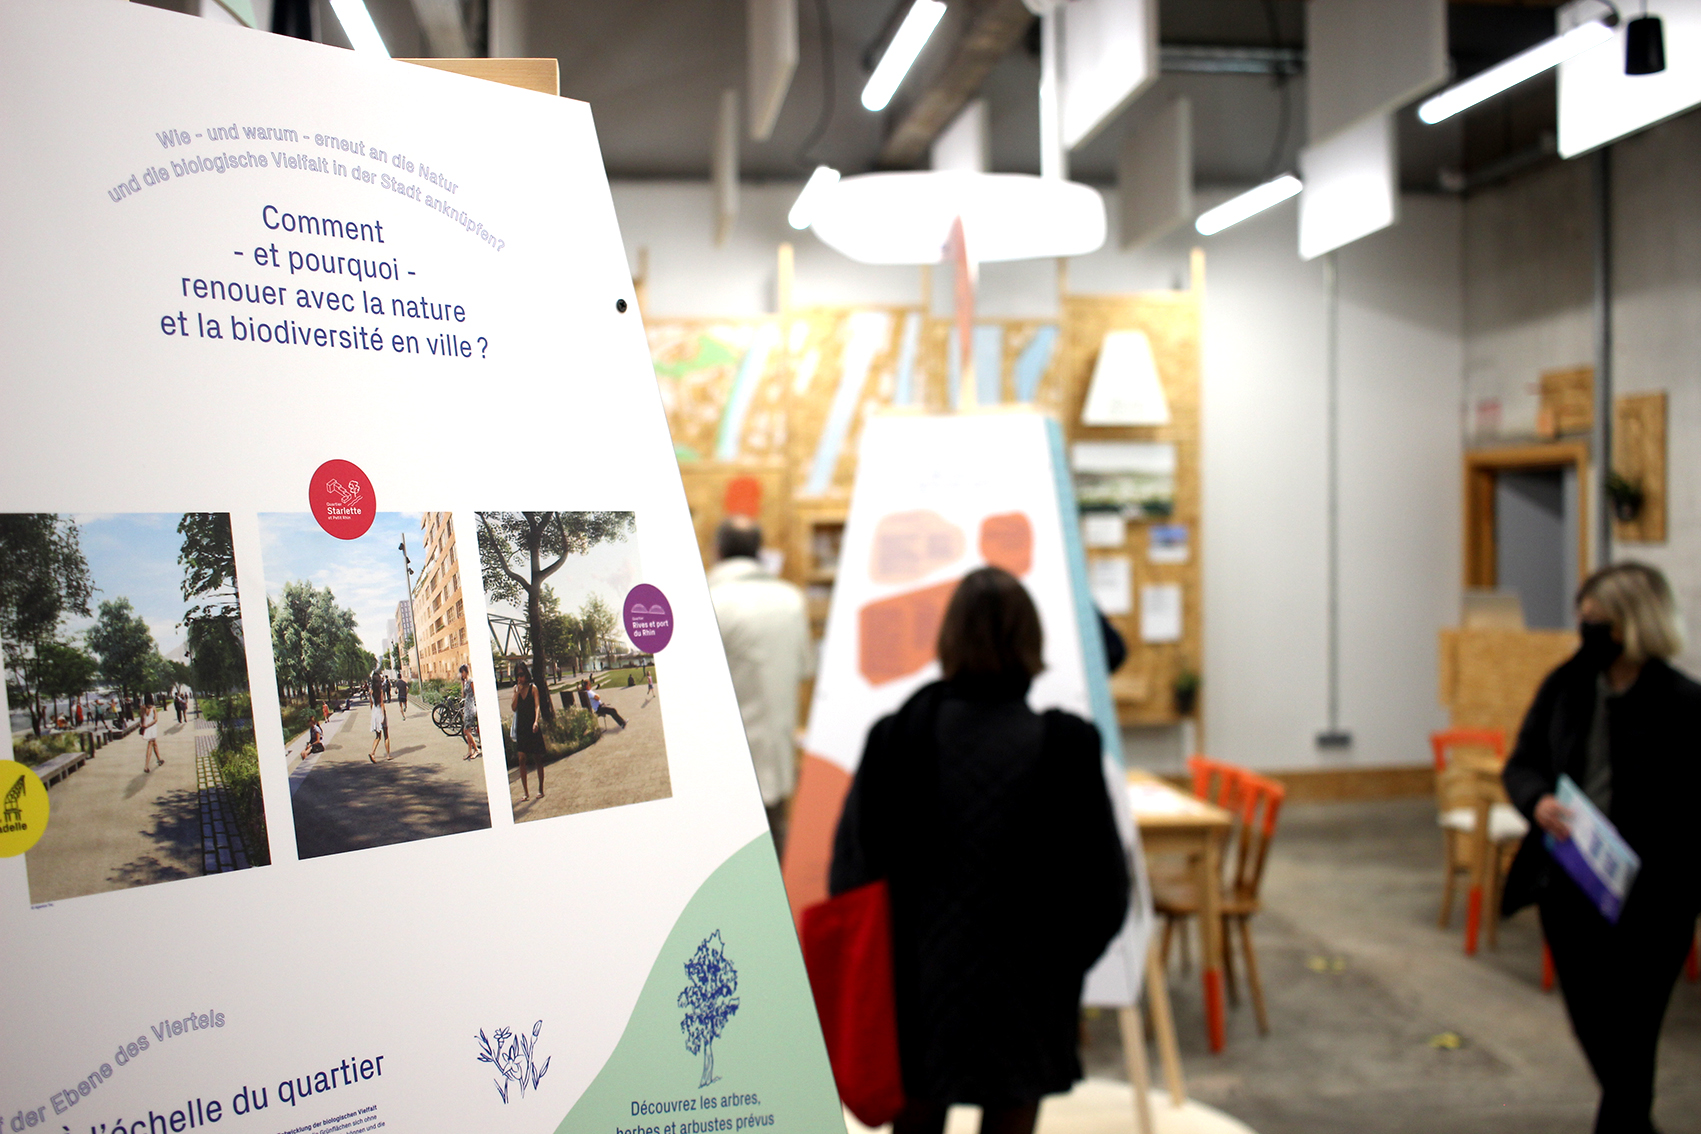 Comment rendre une ville plus écologique ? La réponse dans l'exposition "Deux-Rives, c'est quoi le plan ?" (Crédits photo : Justine Frémiot)